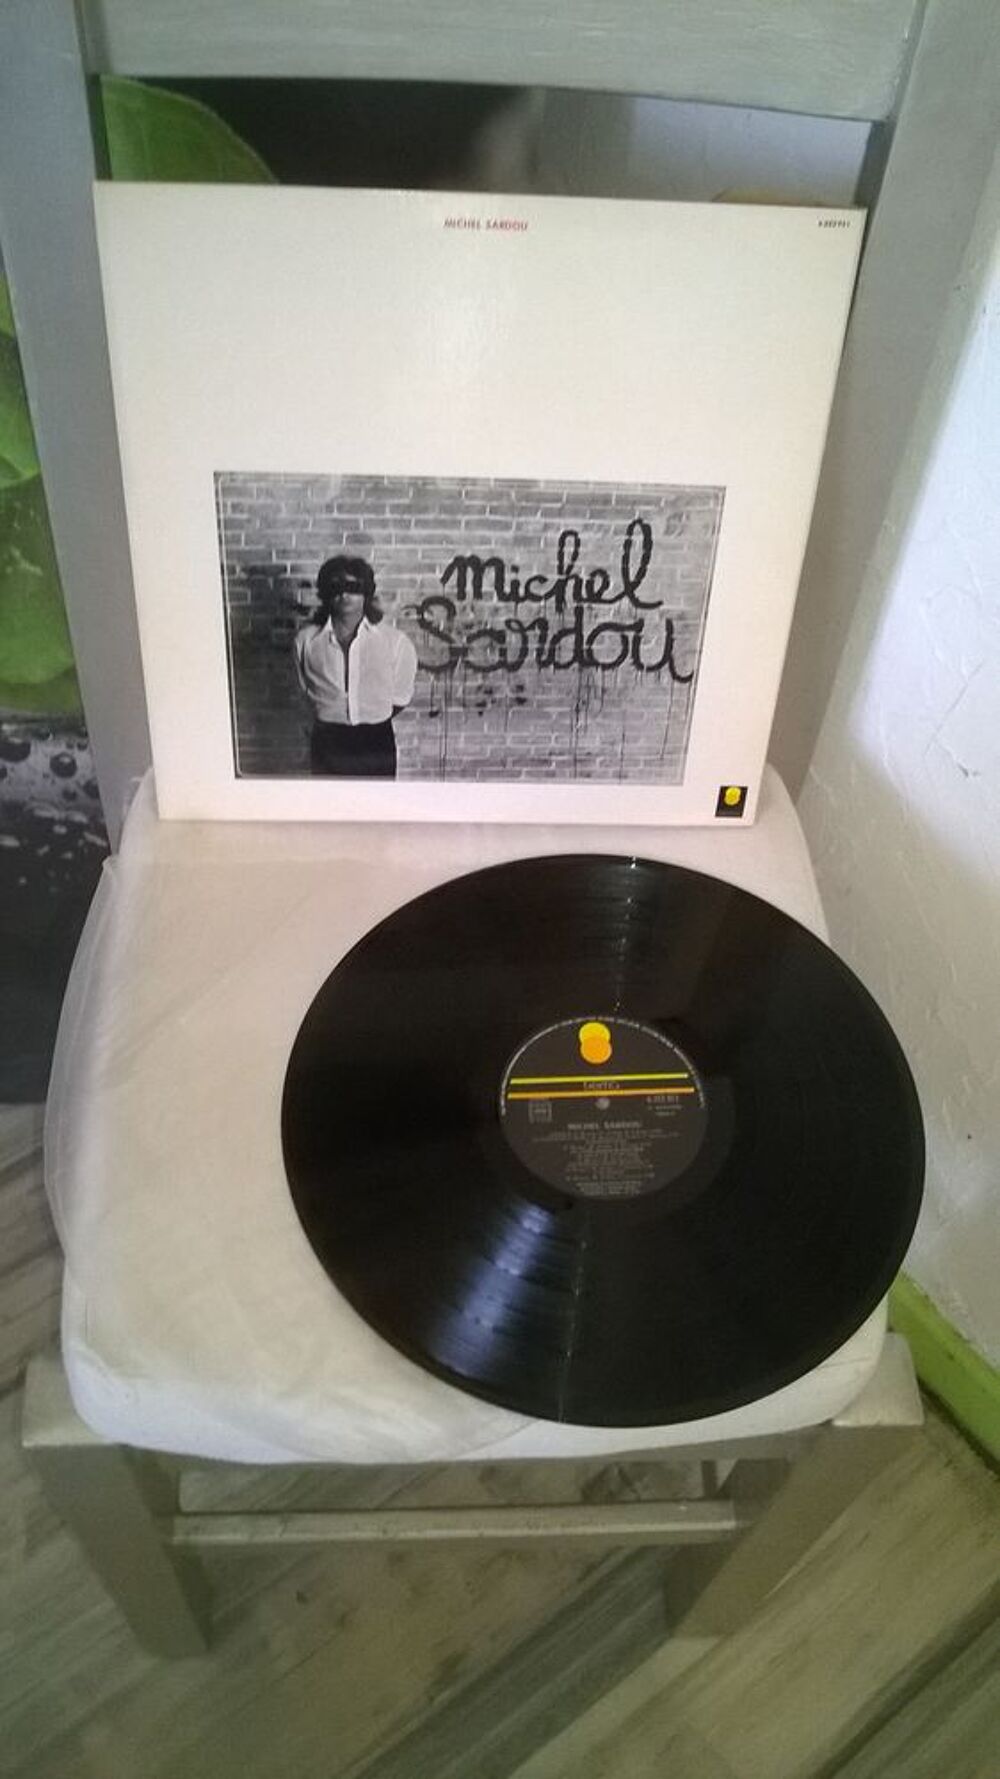 Vinyle Michel Sardou
Danton
1972
Excellent etat
Danton 
CD et vinyles